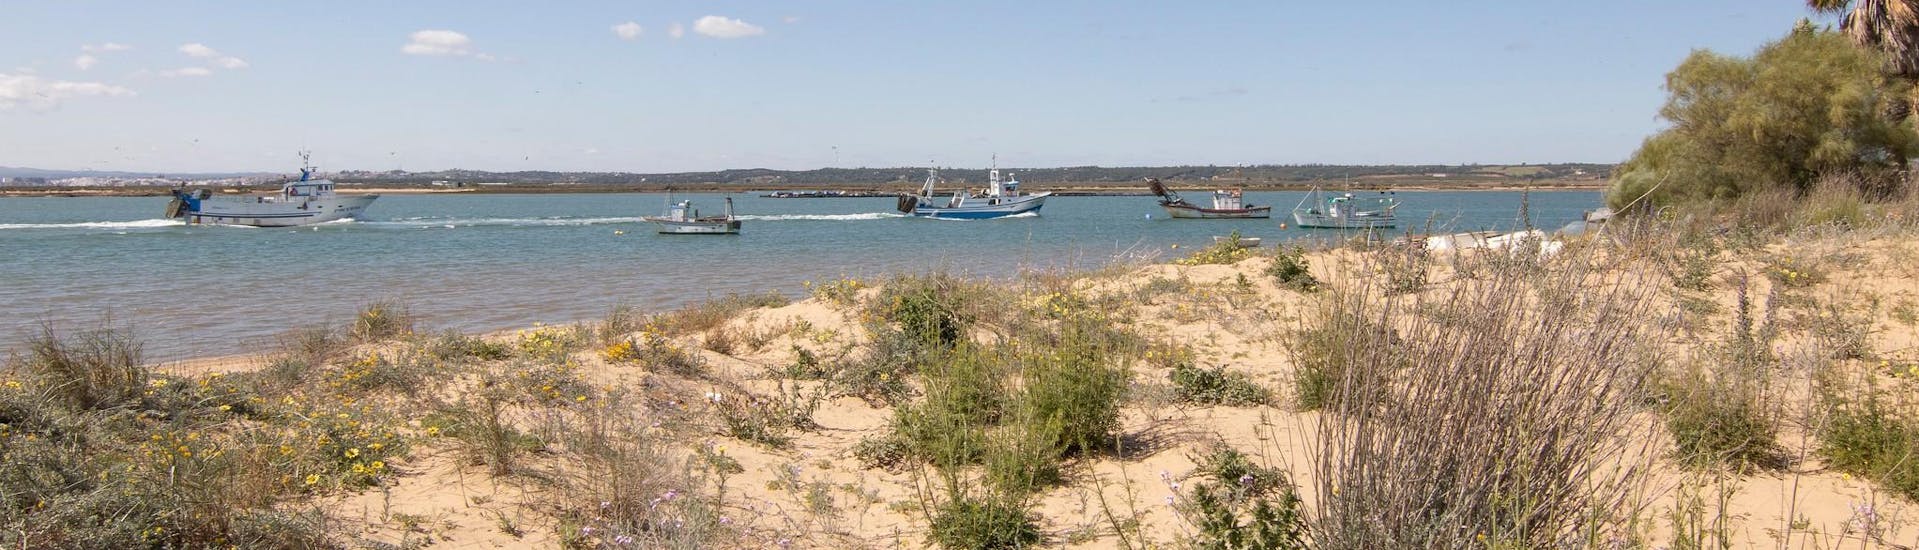 Vissersboten voor het strand van Isla Cristina, een prachtige locatie die je kunt ontdekken met een boottocht.